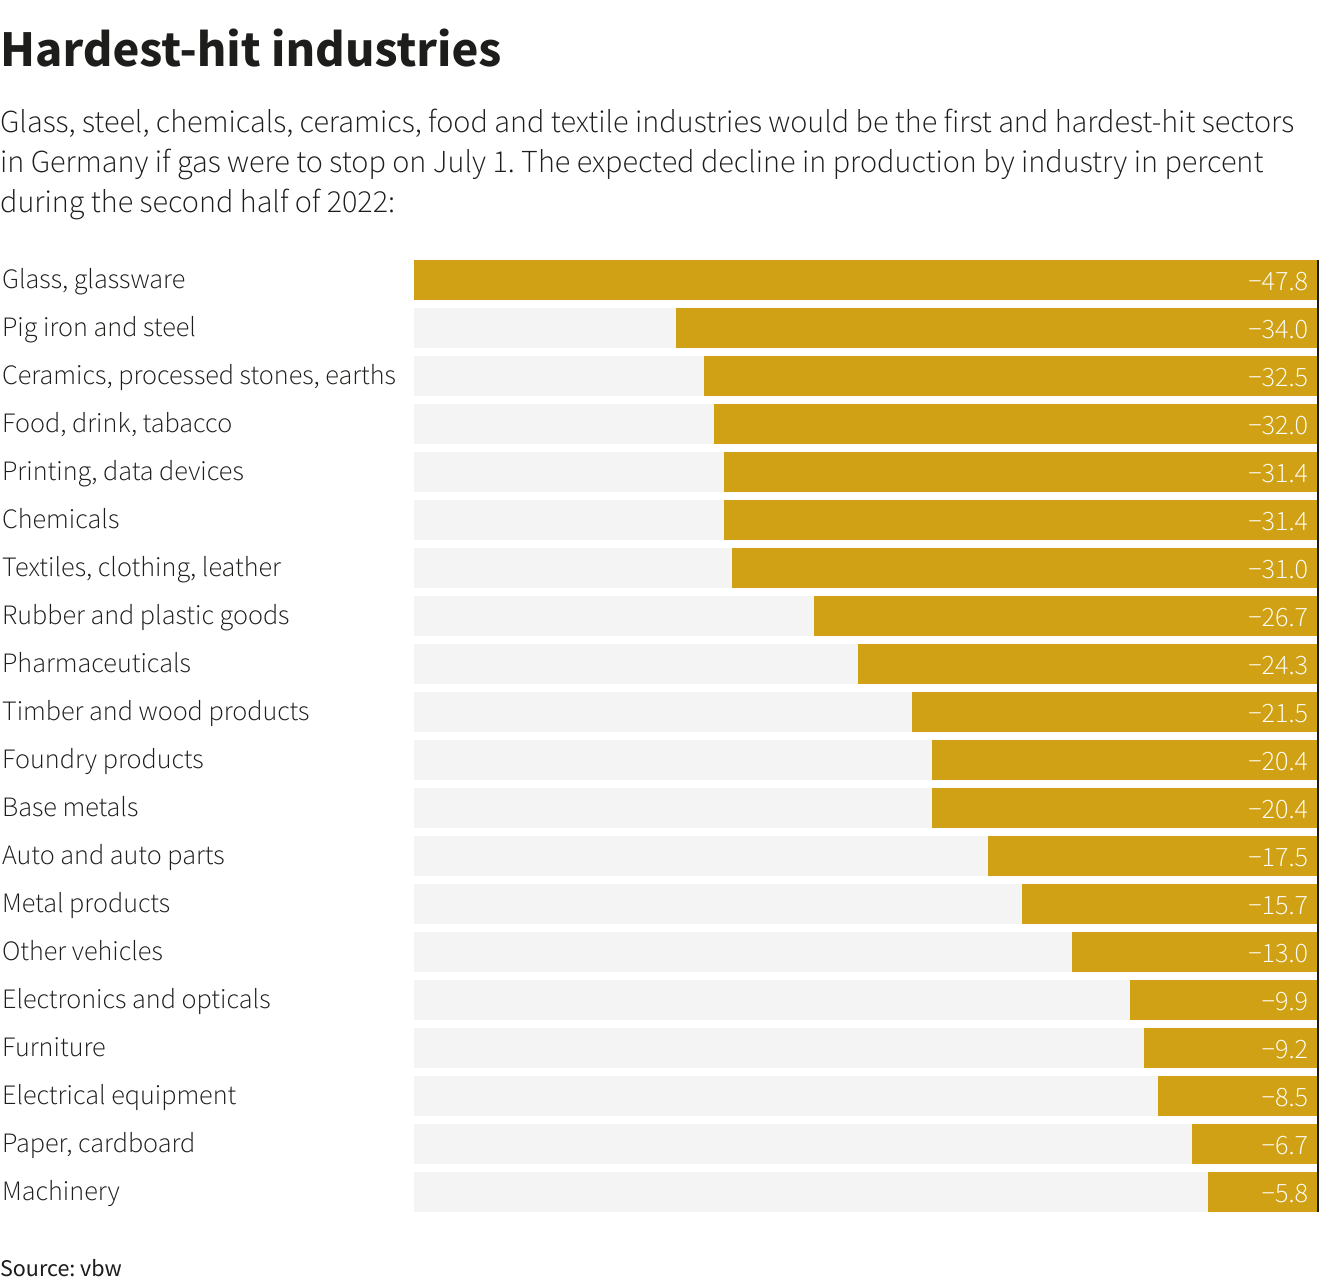 Hardest hit industries